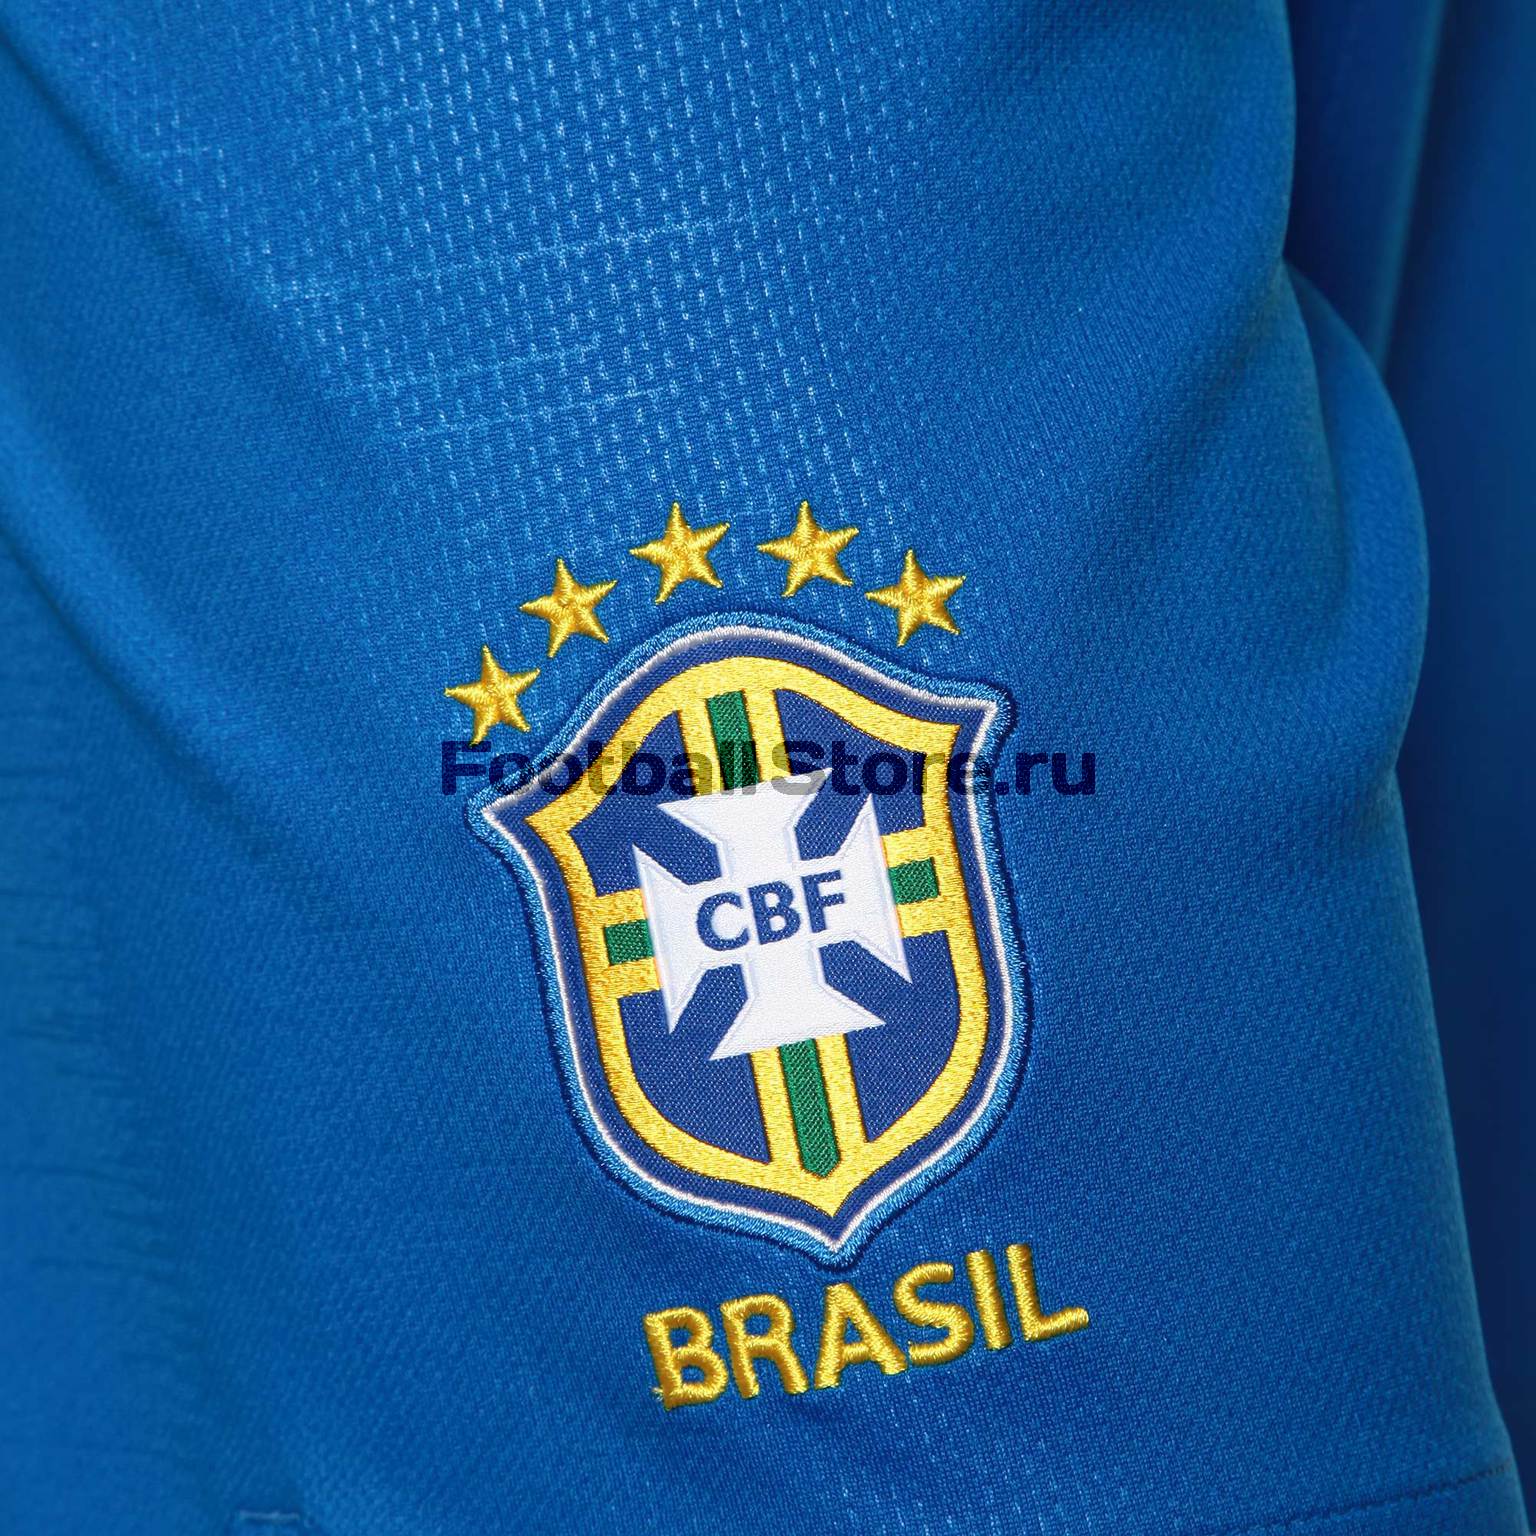 Шорты Nike сборной Бразилии 893920-453 